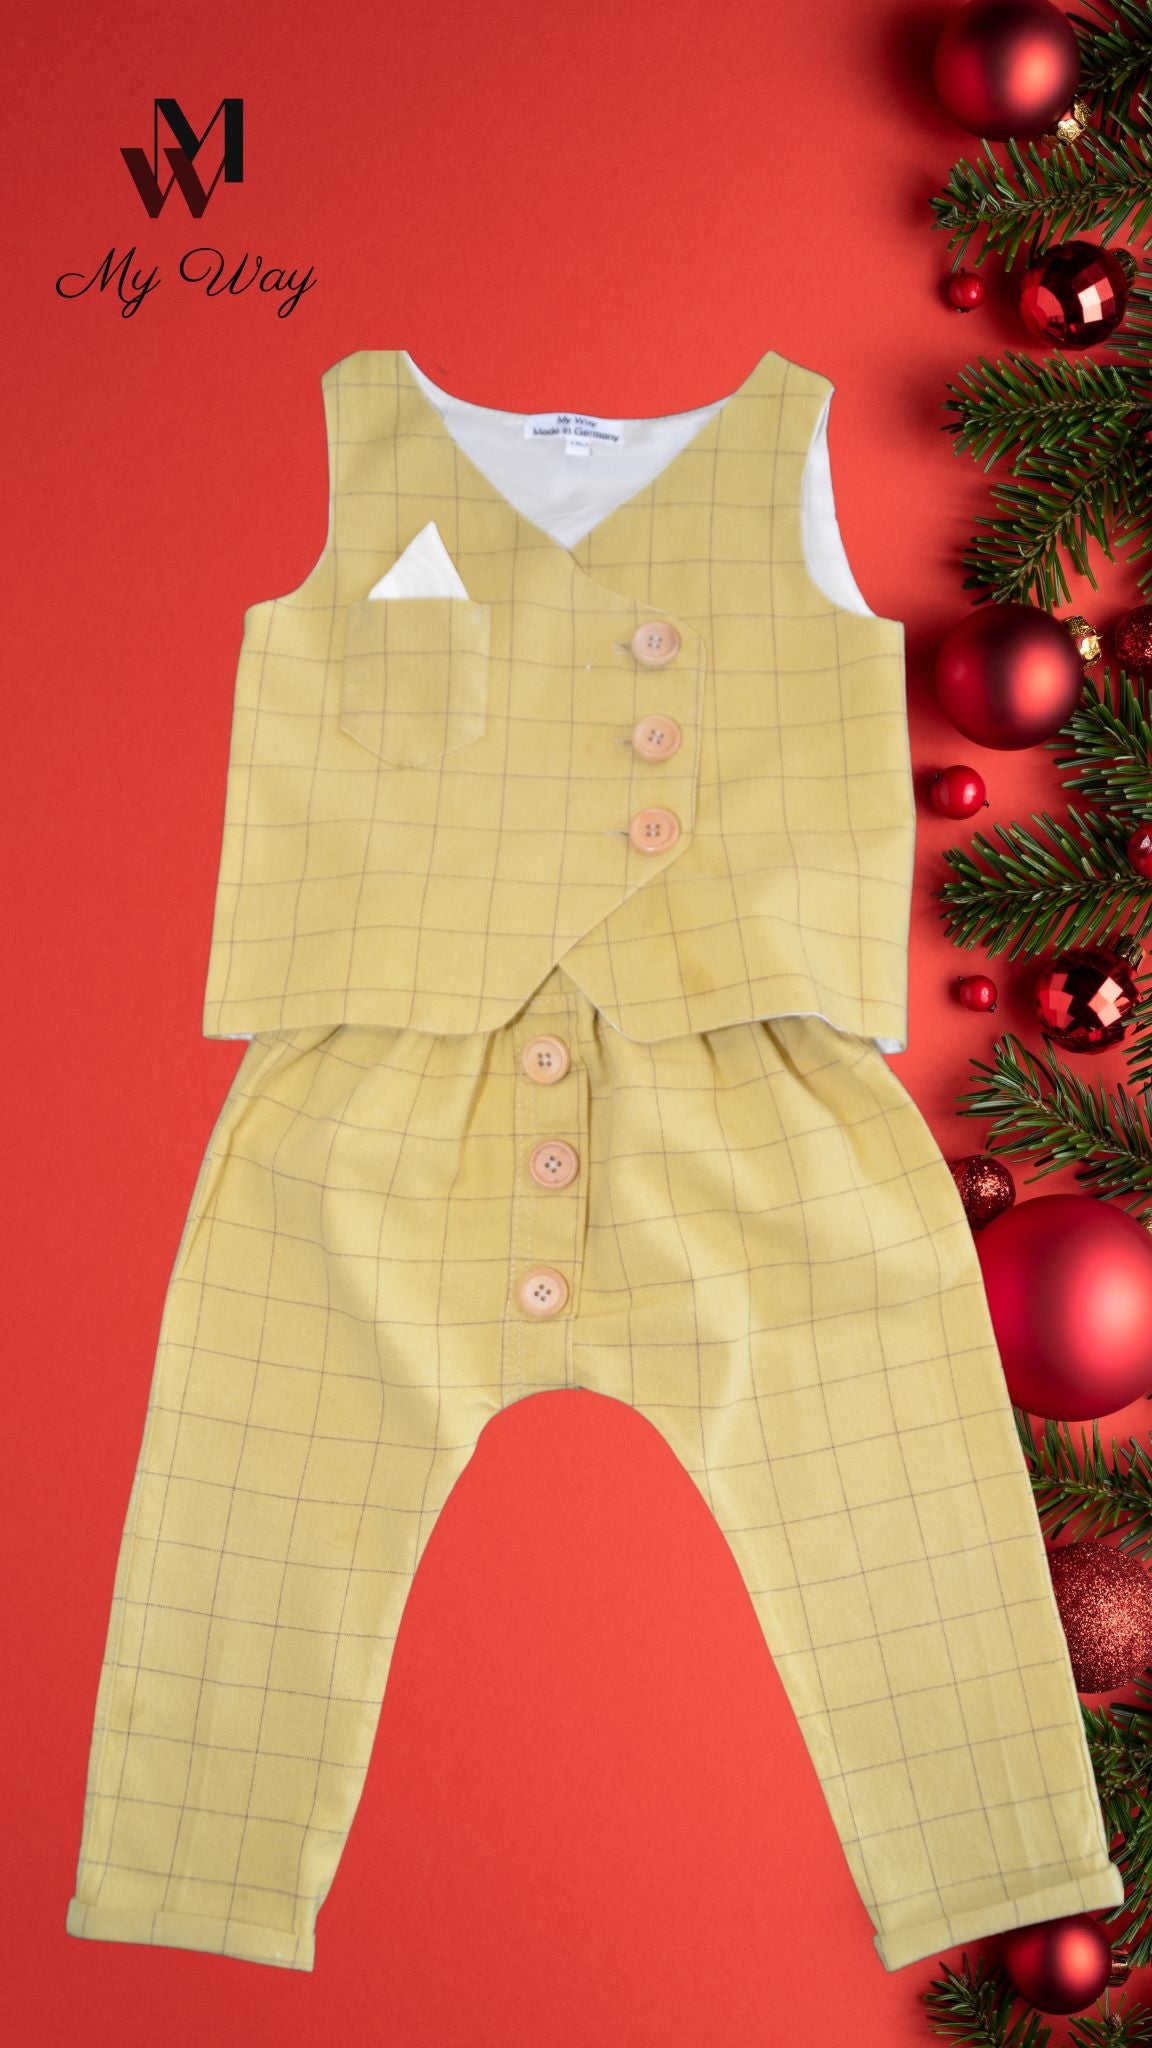 Hochwertige Gelber Kinderanzüg von My Way D&A Gelb Kinder-Anzüge online kaufen Anzug für Jungen mit Weste - zu günstigen Preisen Handegemacht